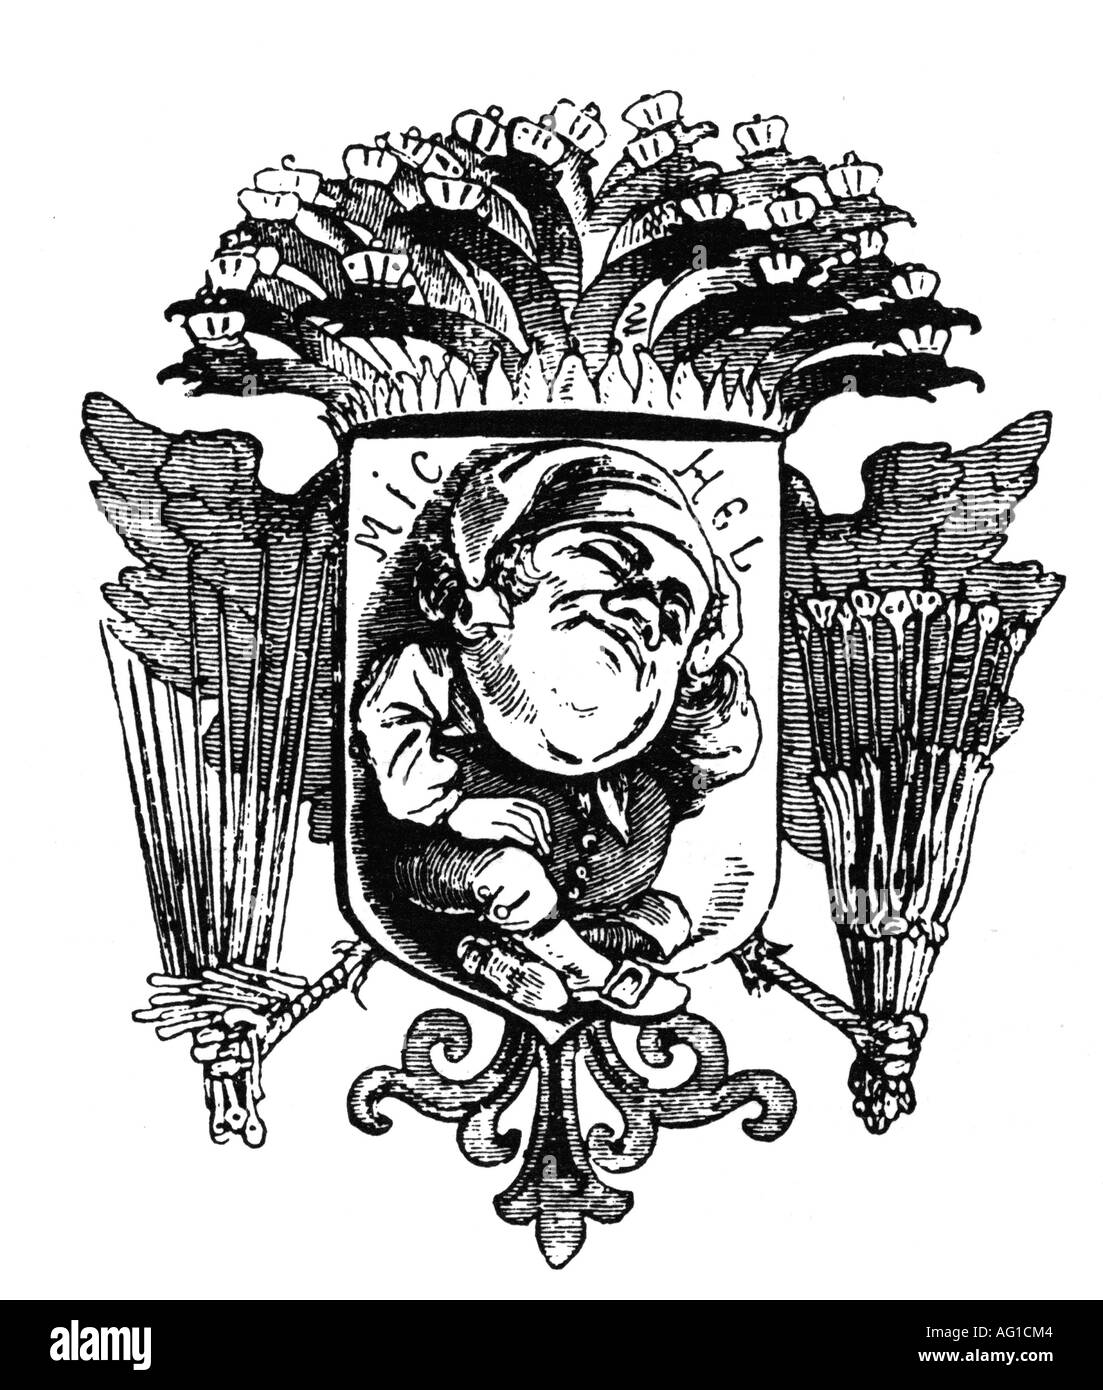 Deutscher Michel, personification of the German nation, caricature, cartoon, "Wappen für das deutsche Volk vor 1848" (Crest for the German people before 1848), from "Leuchtkugel", 1849, Stock Photo